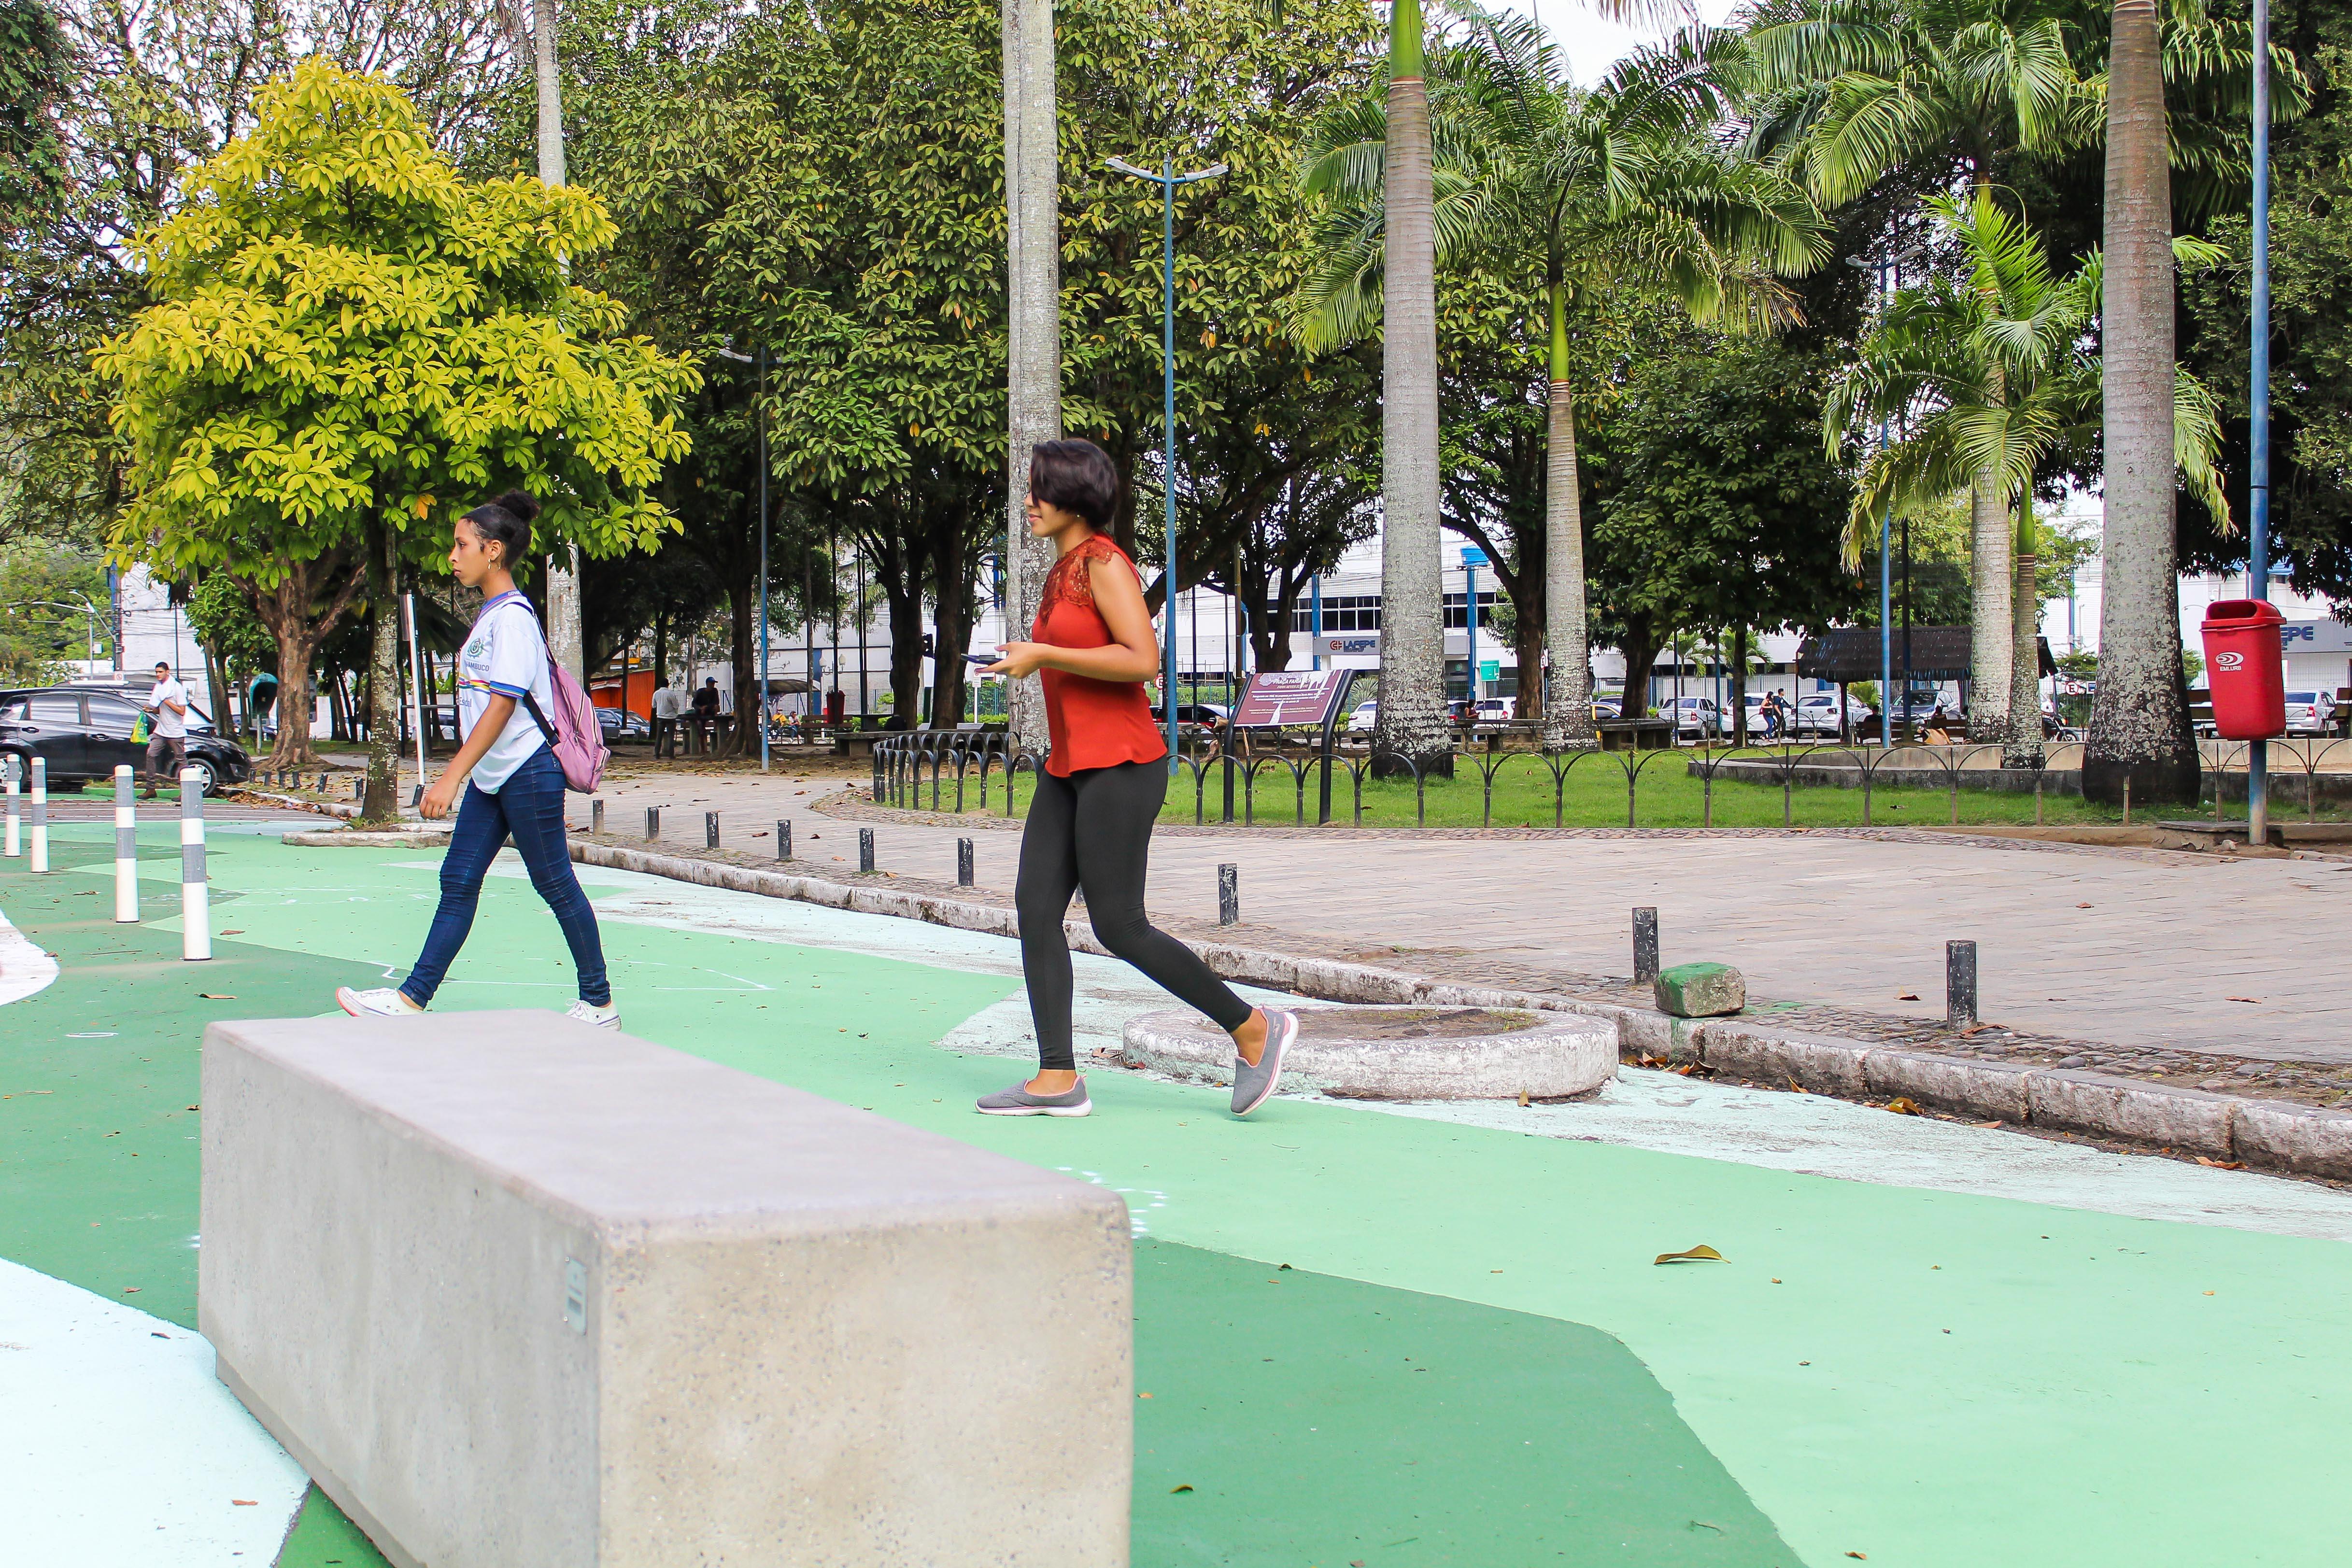 Intervenção vai aumentar a segurança viária dos pedestres em frente ao Parque de Dois Irmãos